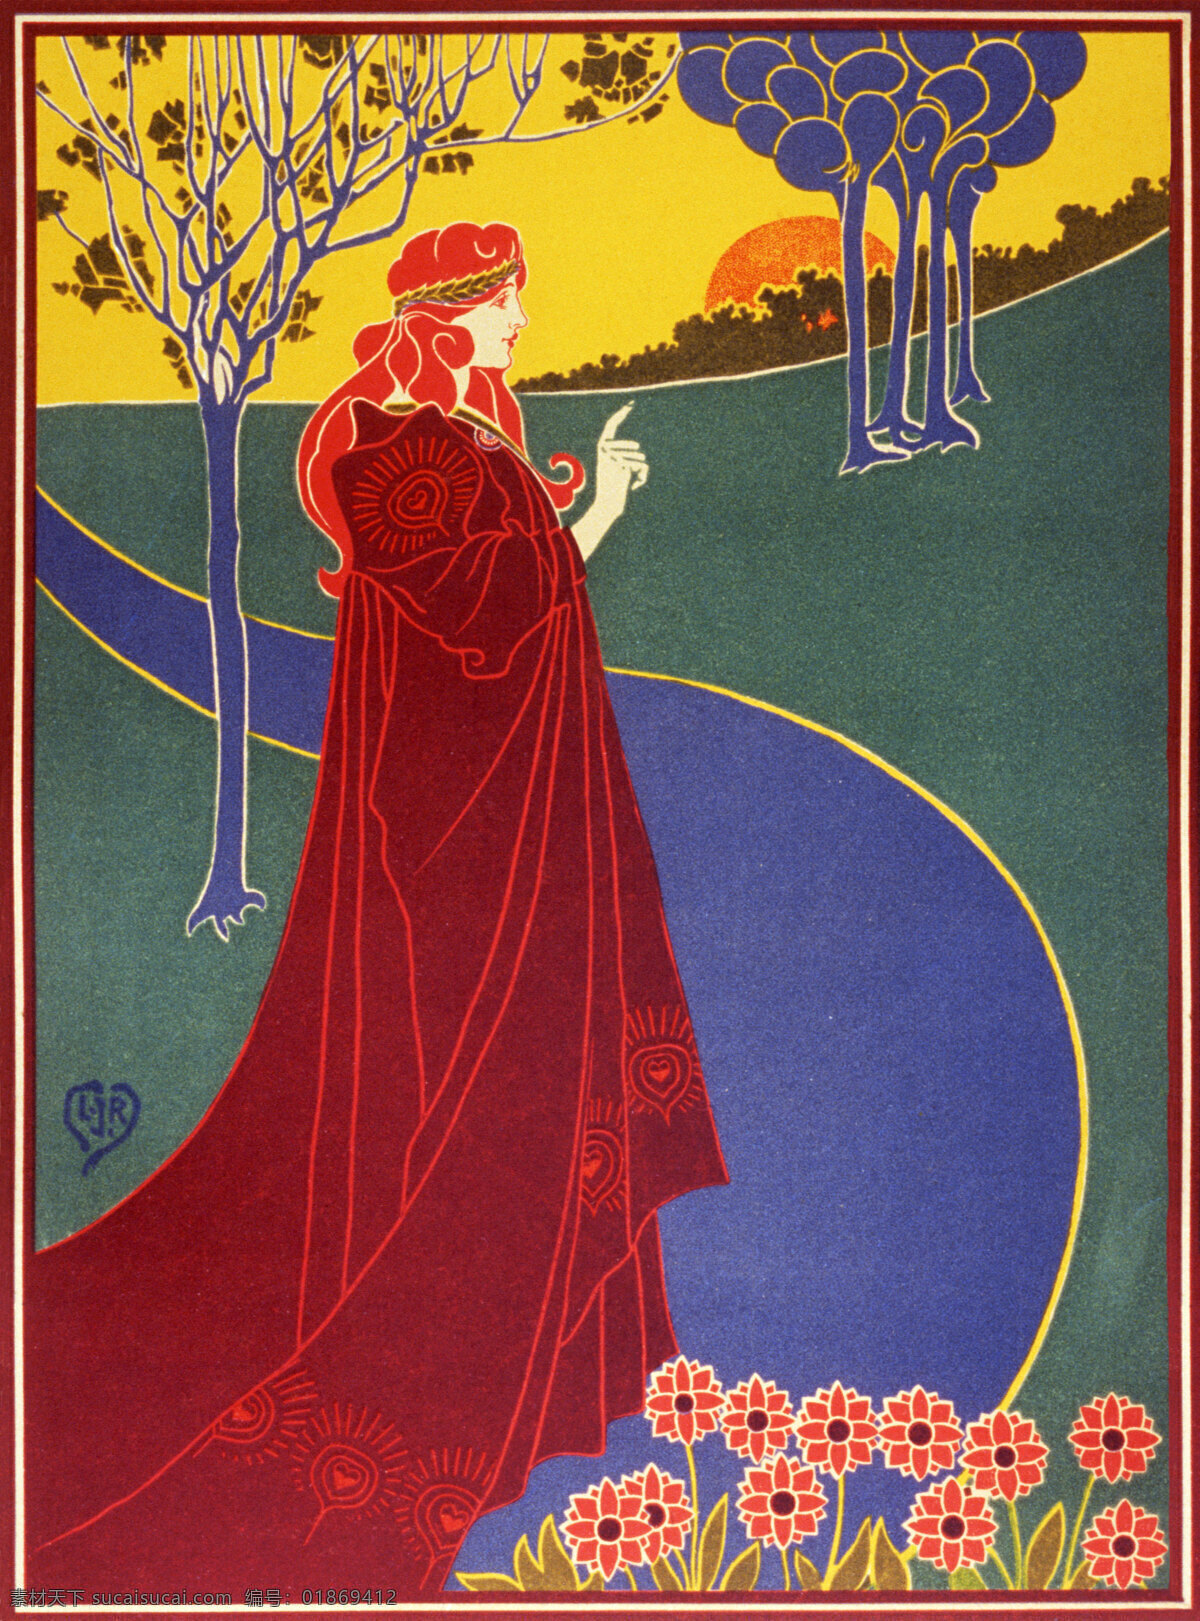 国外 红衣 花朵 女人 欧式海报 欧洲 人物 海报 设计素材 小路 树木 太阳 招贴设计 其他海报设计